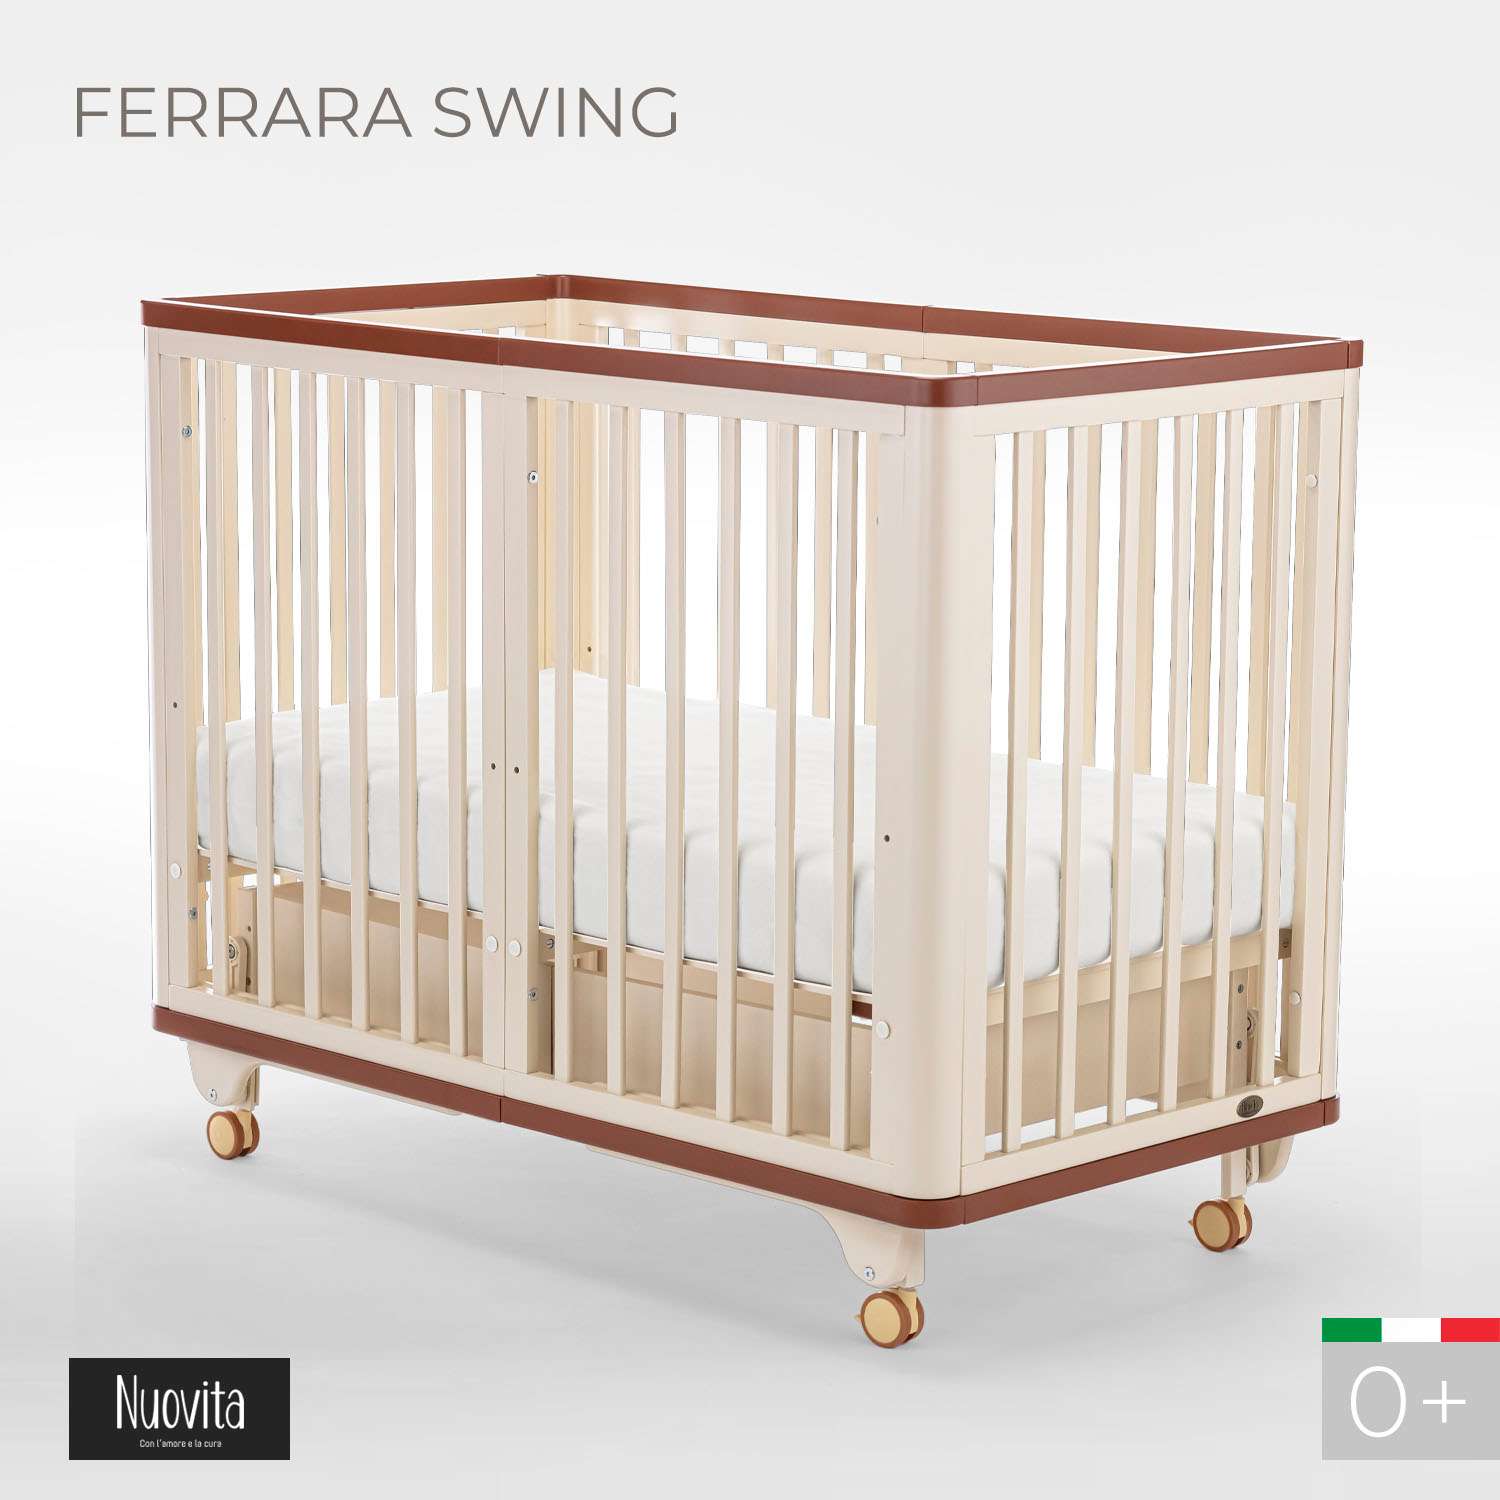 Детская кроватка Nuovita Ferrara swing прямоугольная, продольный маятник (слоновая кость) - фото 2